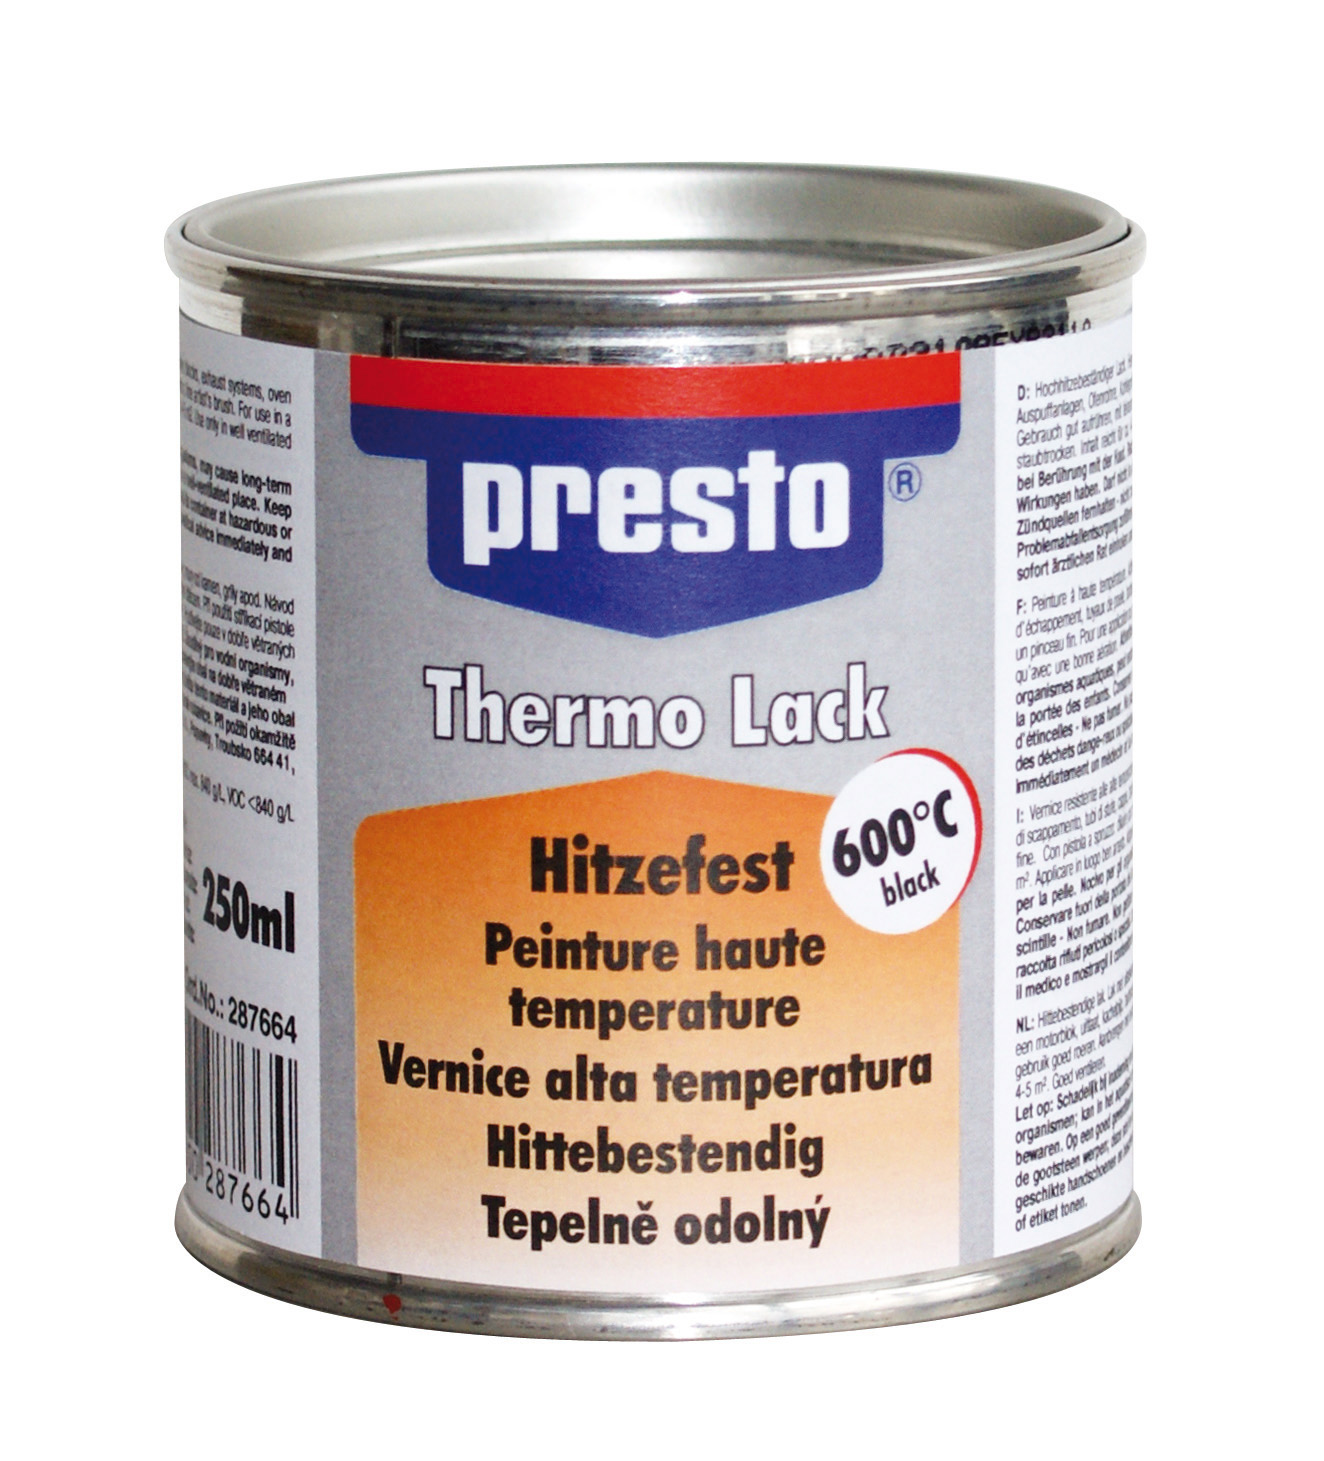 presto Thermo-Lack 600°C schwarz 250ml